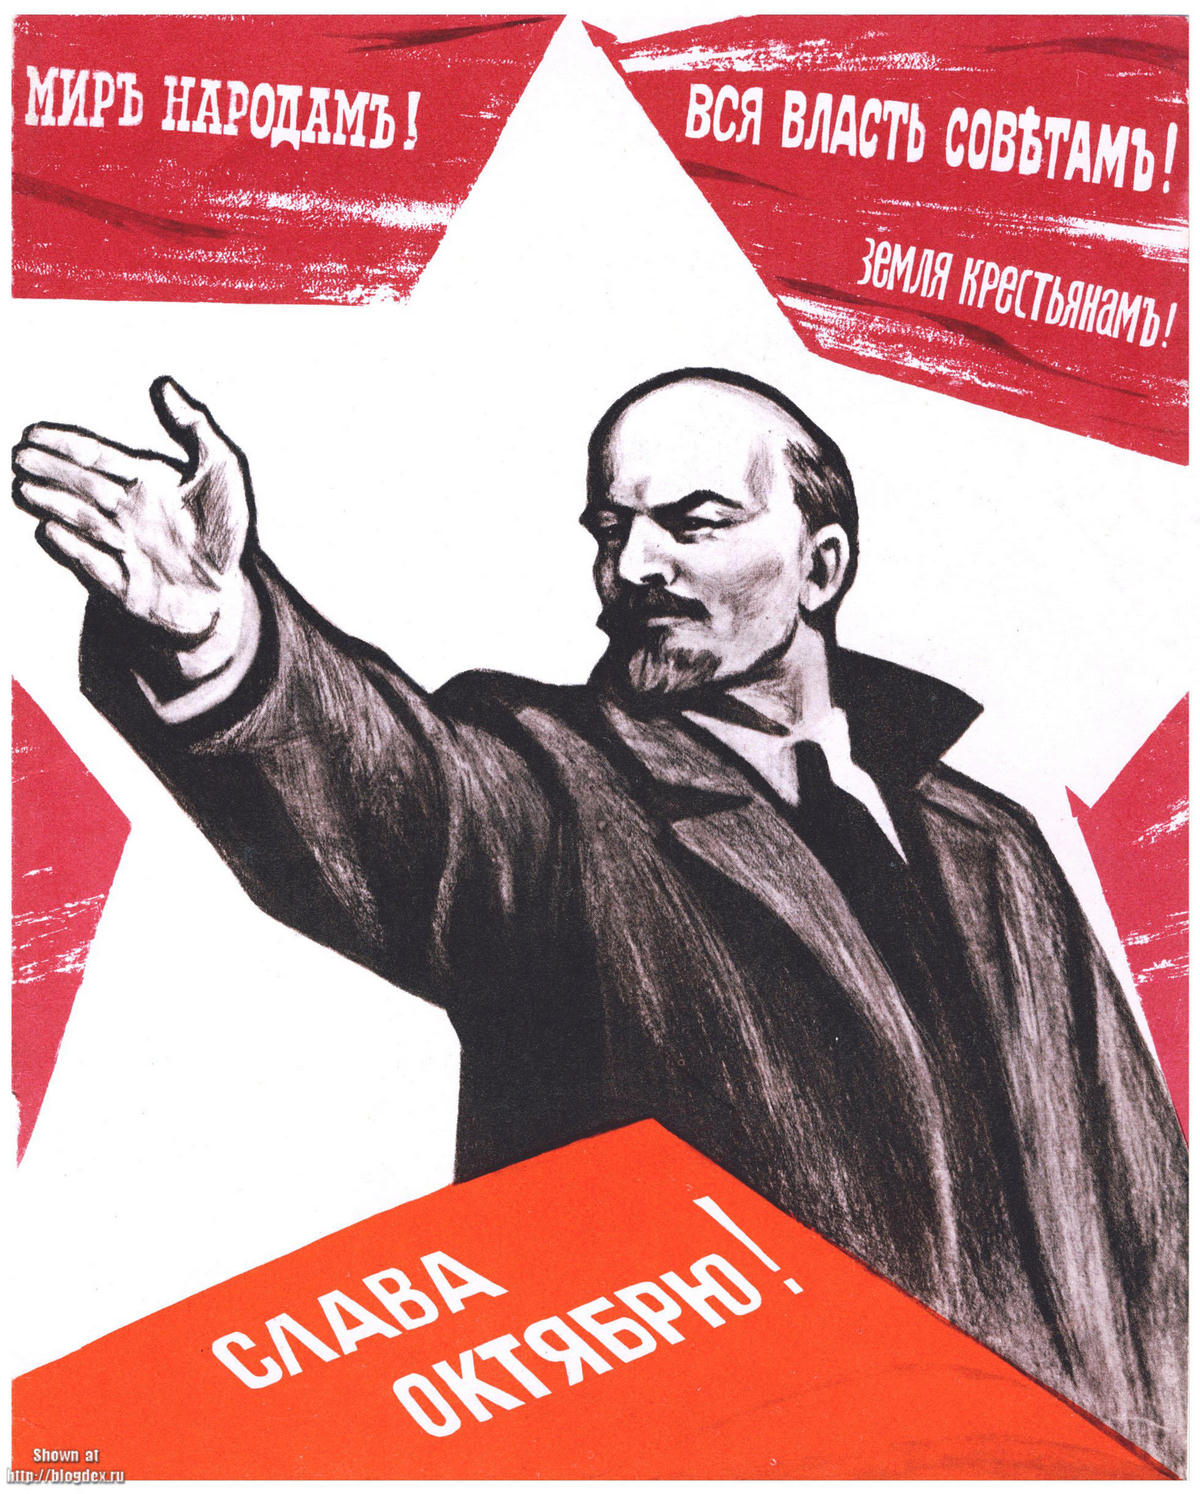 Лозунг большевиков вся власть. Лозунг Большевиков вся власть советам. Революция СССР 1917 Ленин. Вся власть советам плакат. Революционные плакаты.